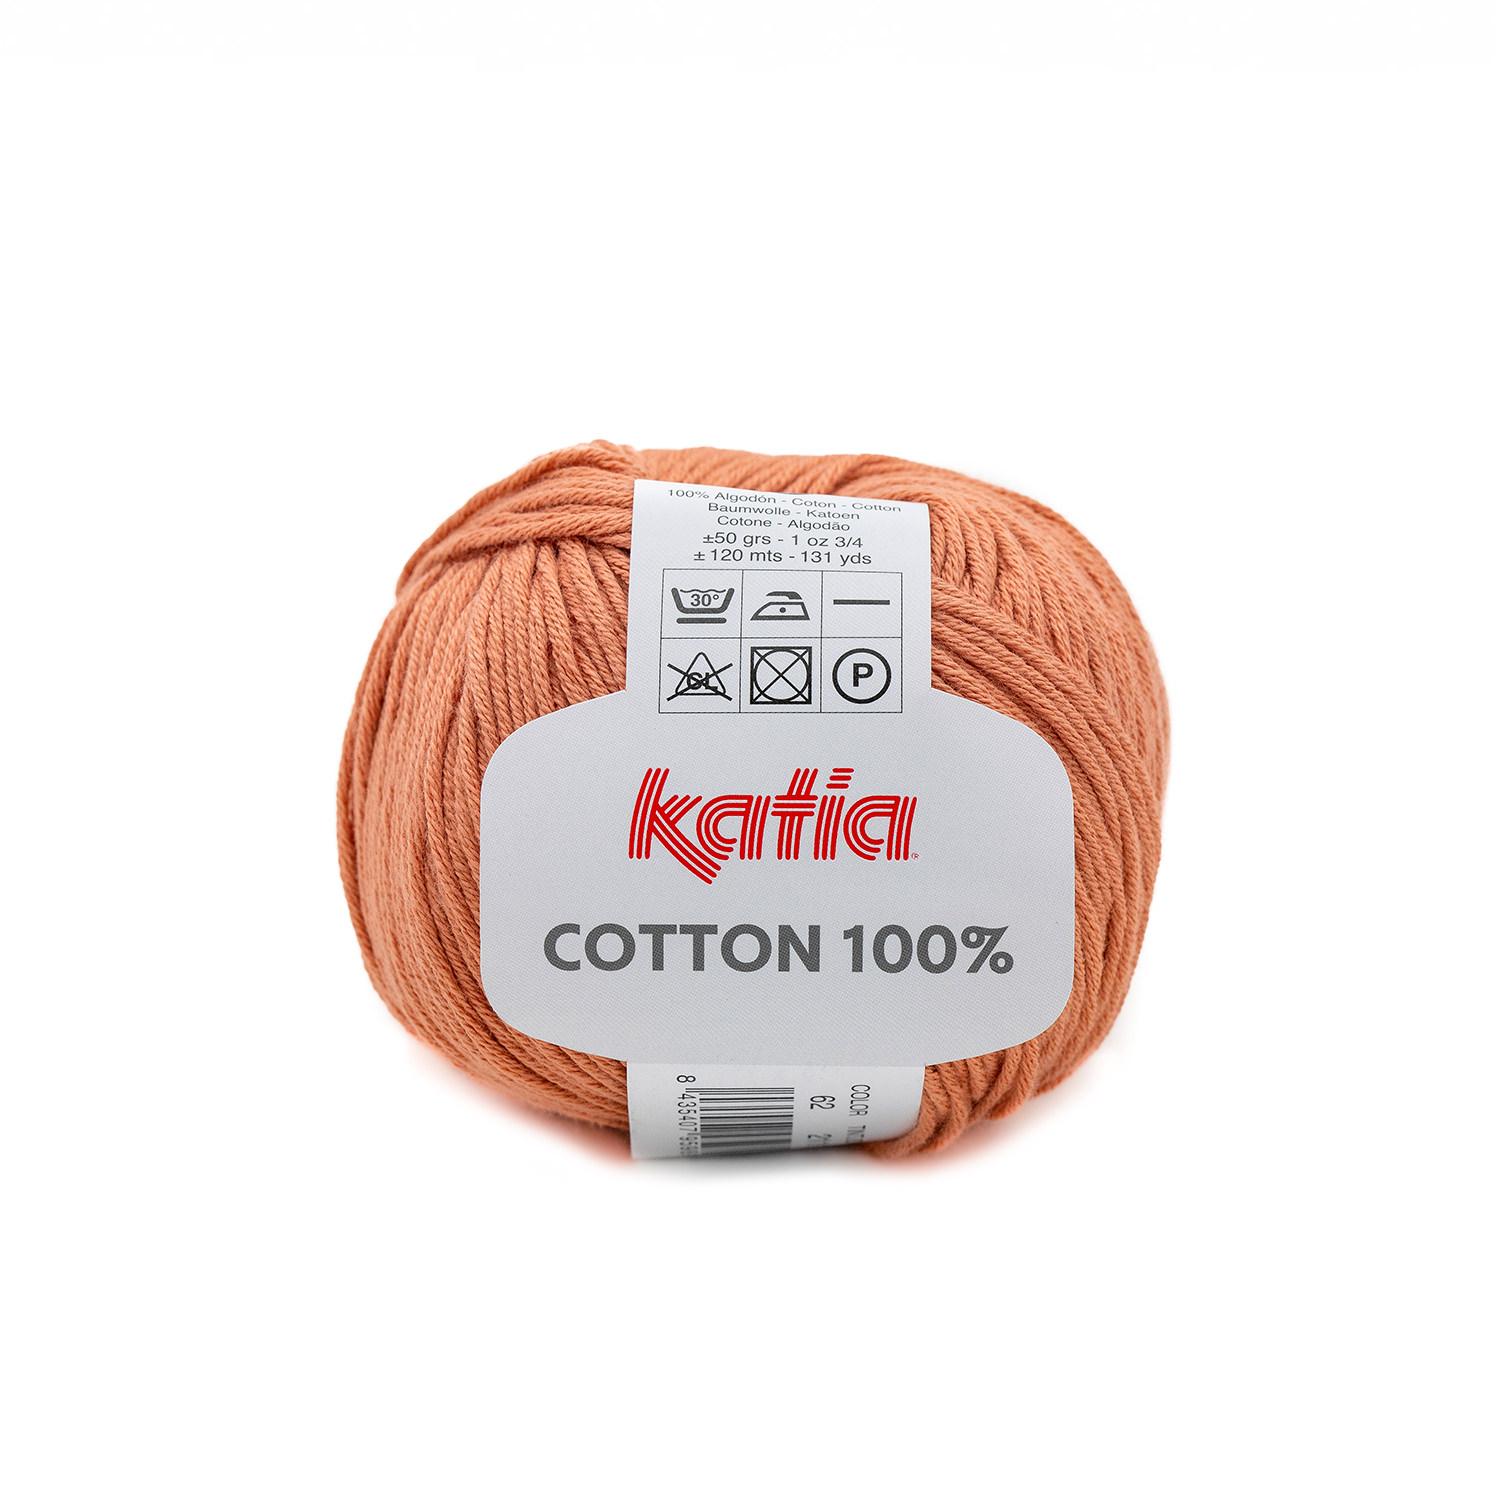 Katia - Cotton 100% - Teja Claro 62